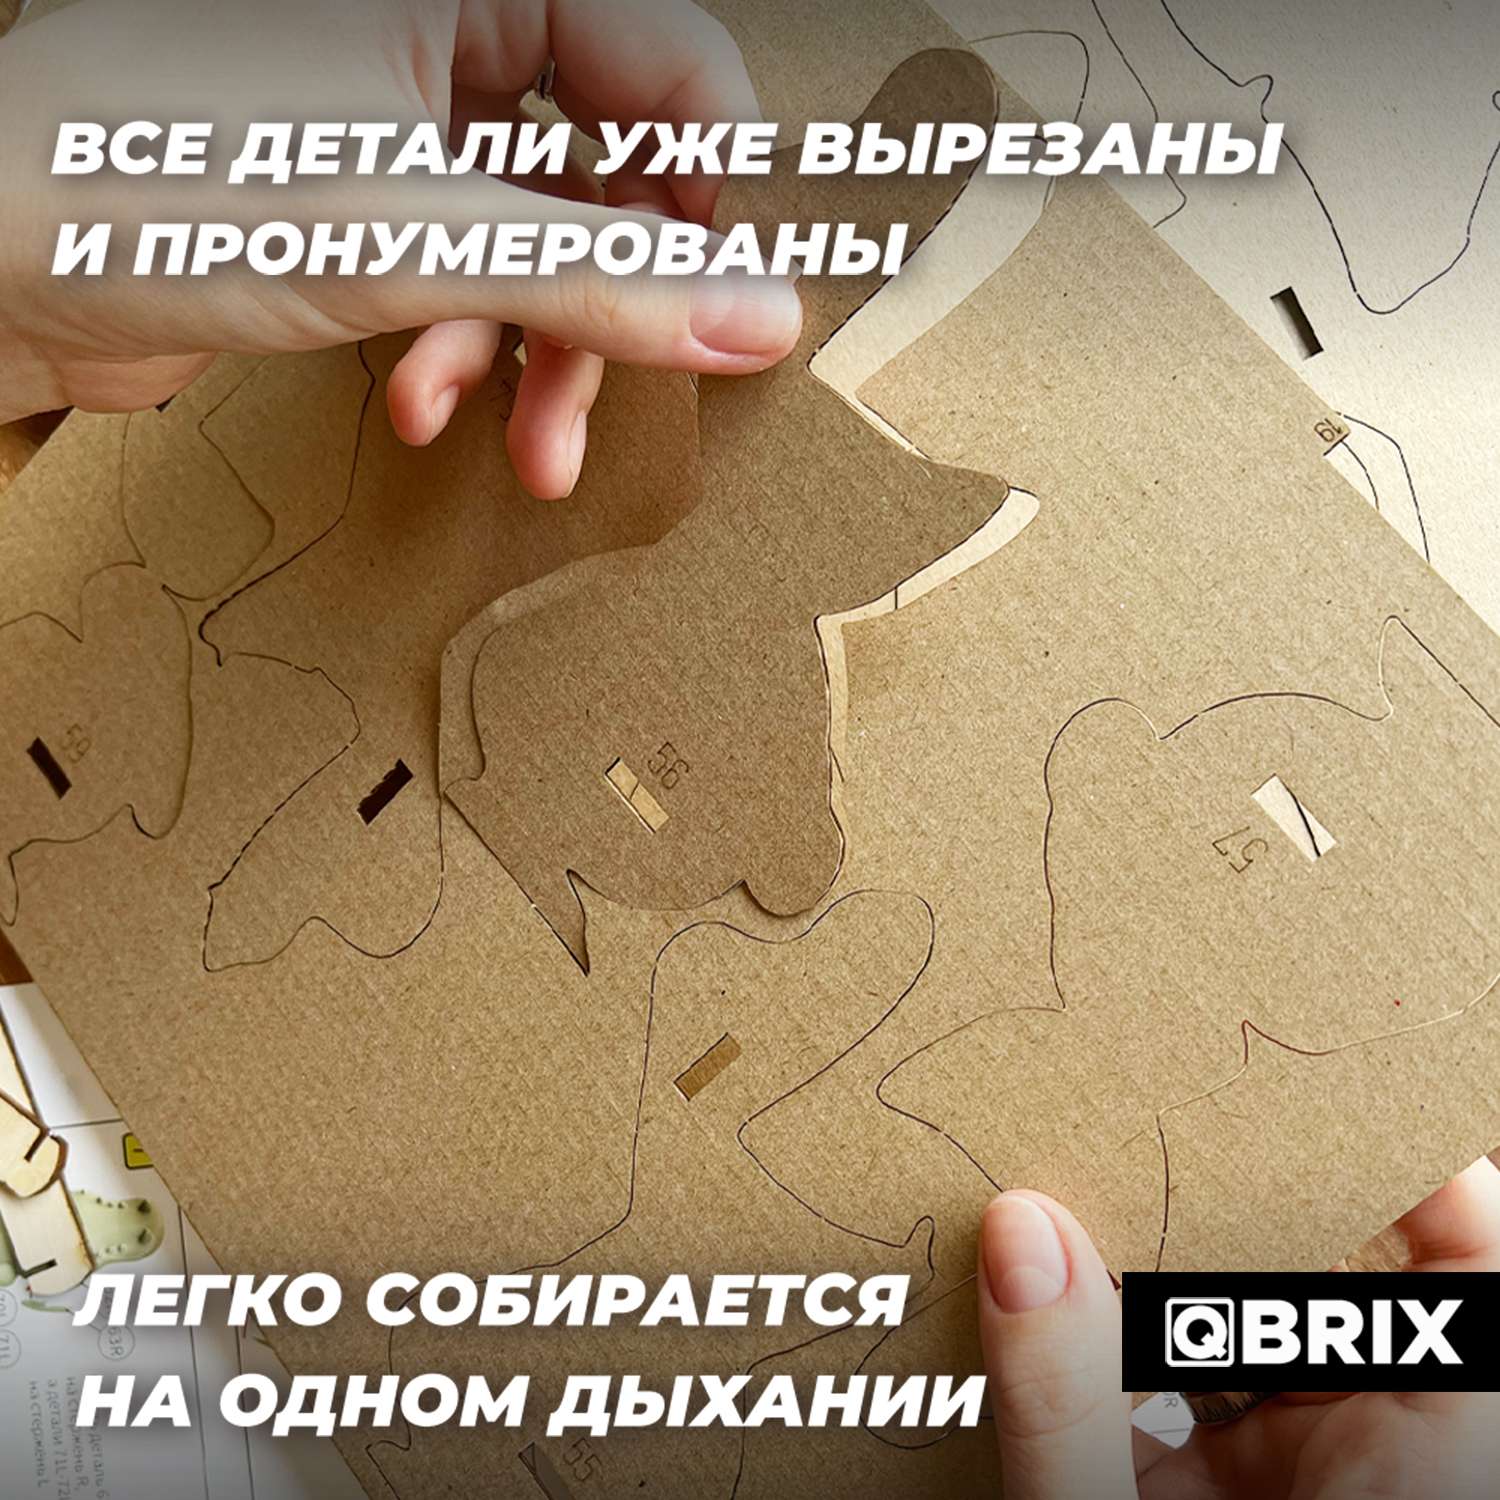 Конструктор QBRIX 3D картонный Крокодильчик органайзер 20037 20037 - фото 6